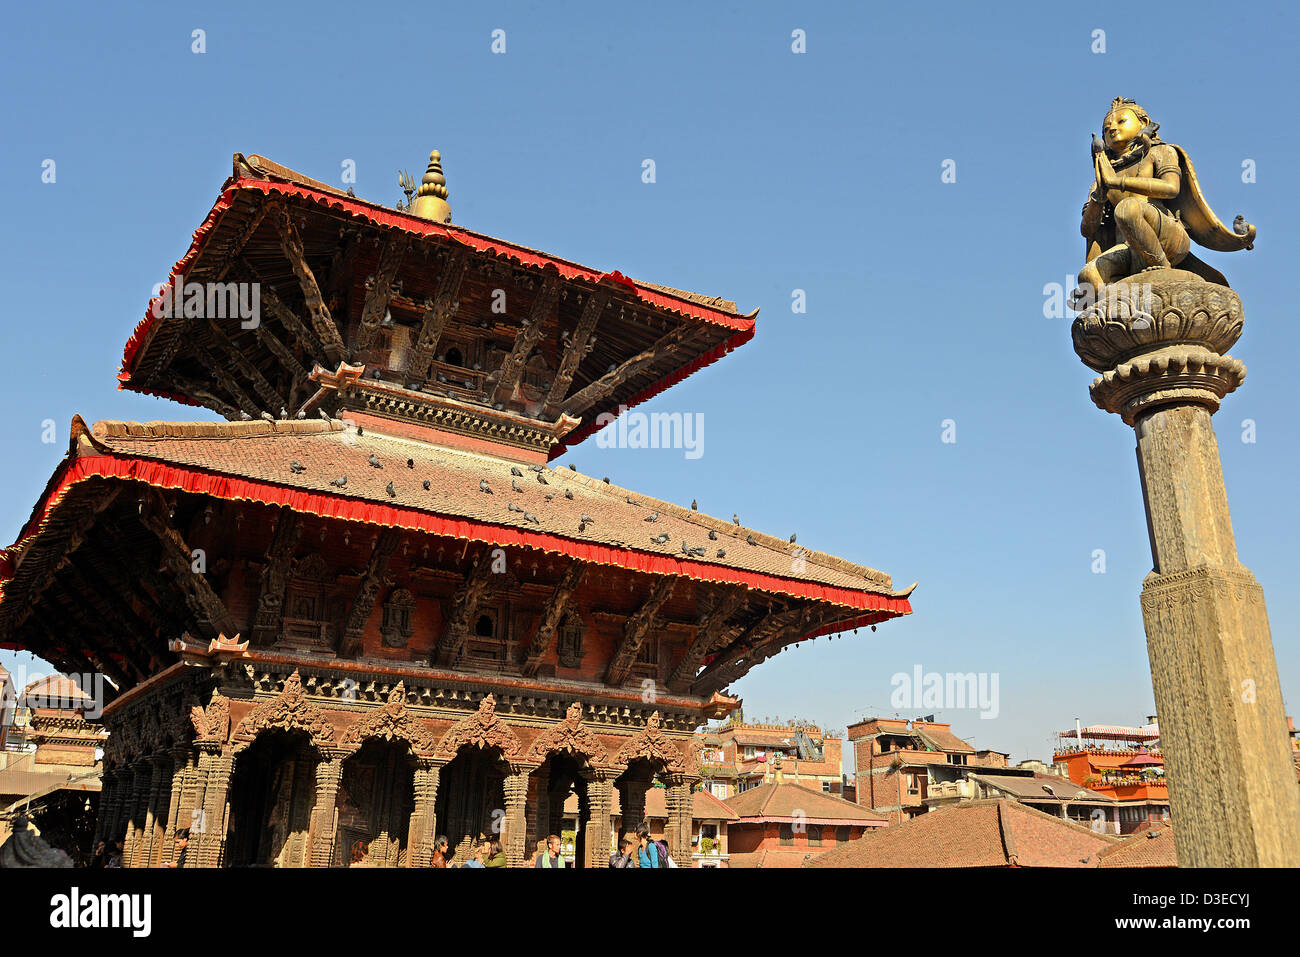 Temple Durbar Square Patan Népal Asie Banque D'Images